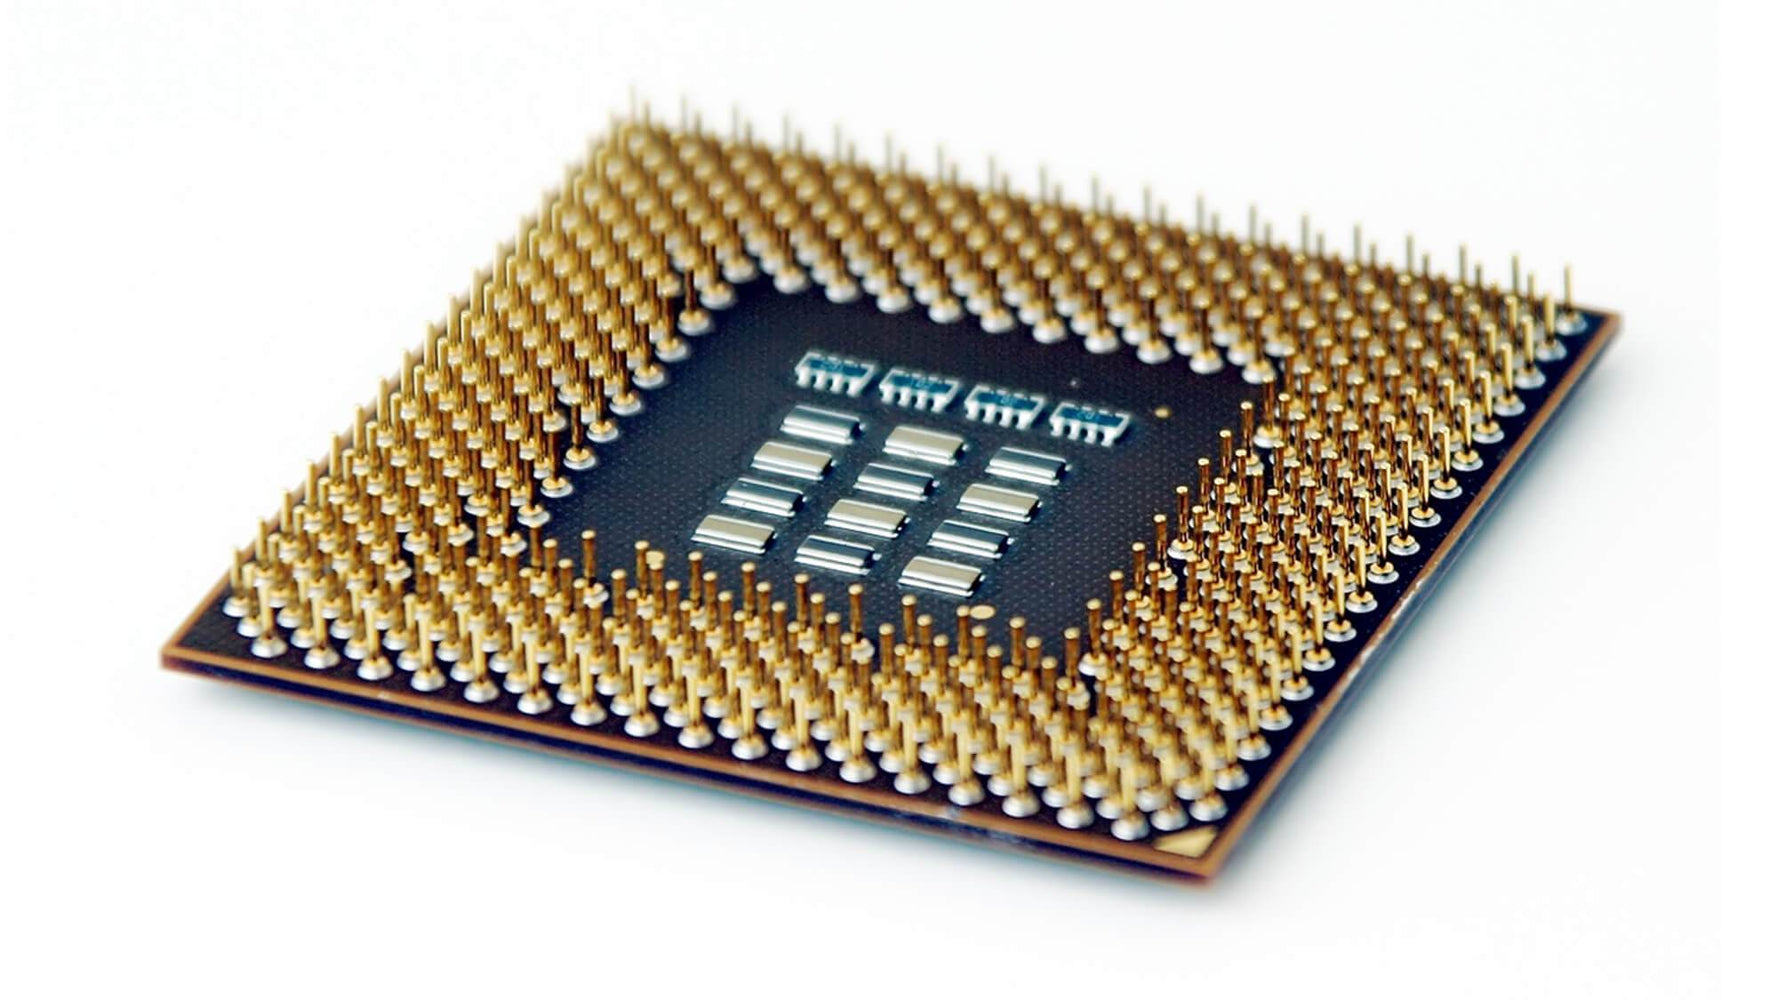 00D1959 - IBM 2.30GHz 7.2GT/s QPI 16MB SmartCache Socket FCLGA2011 Intel Xeon E5-4610 v2 8 Core Processor